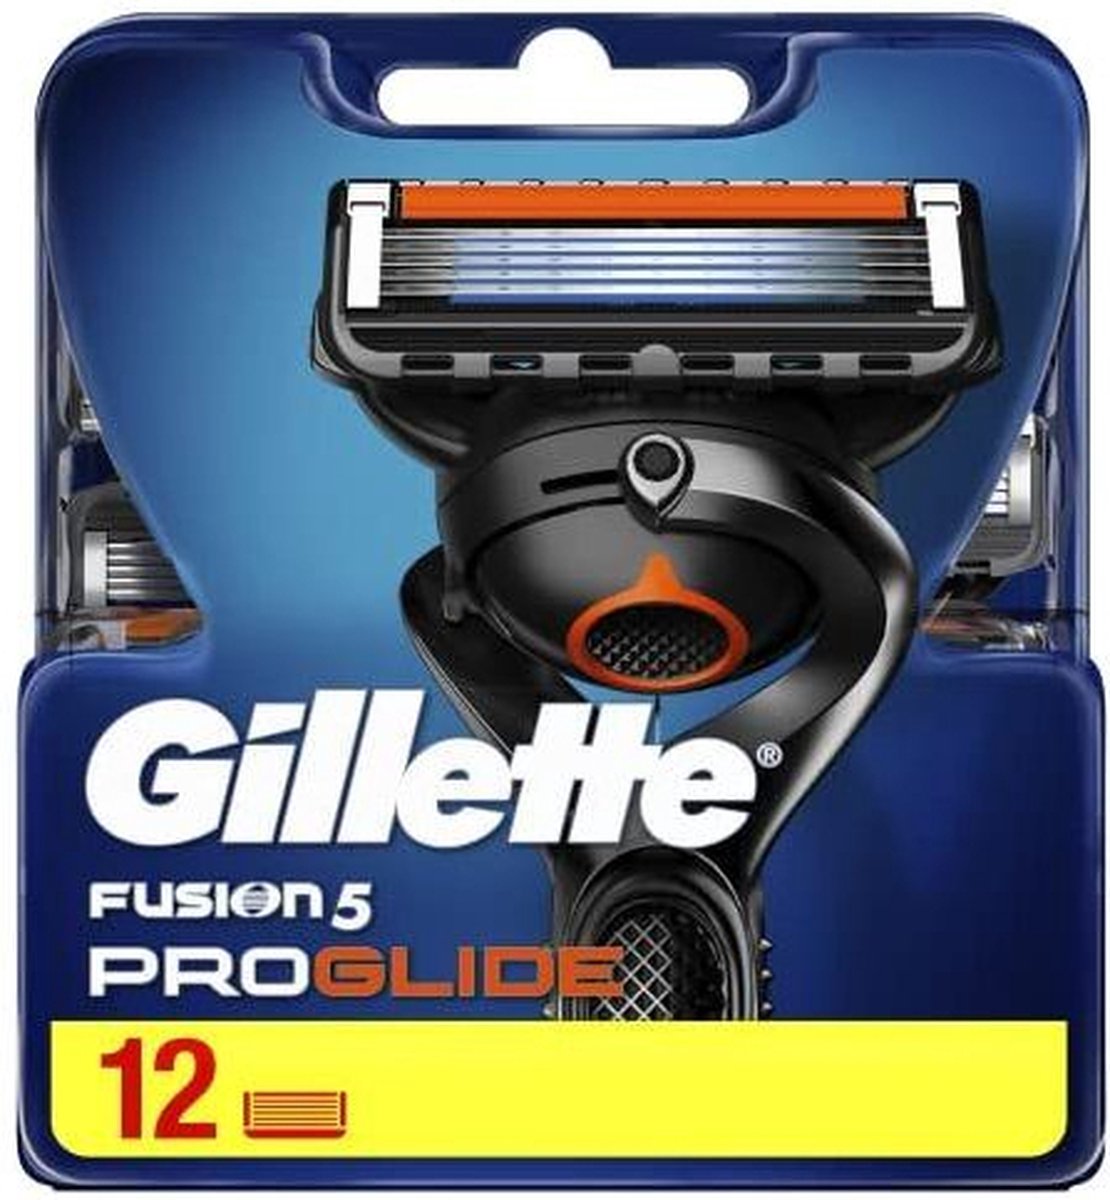 Aftrekken stroom haak Gillette Fusion5 ProGlide Scheermesjes Mannen - 12 stuks | bol.com